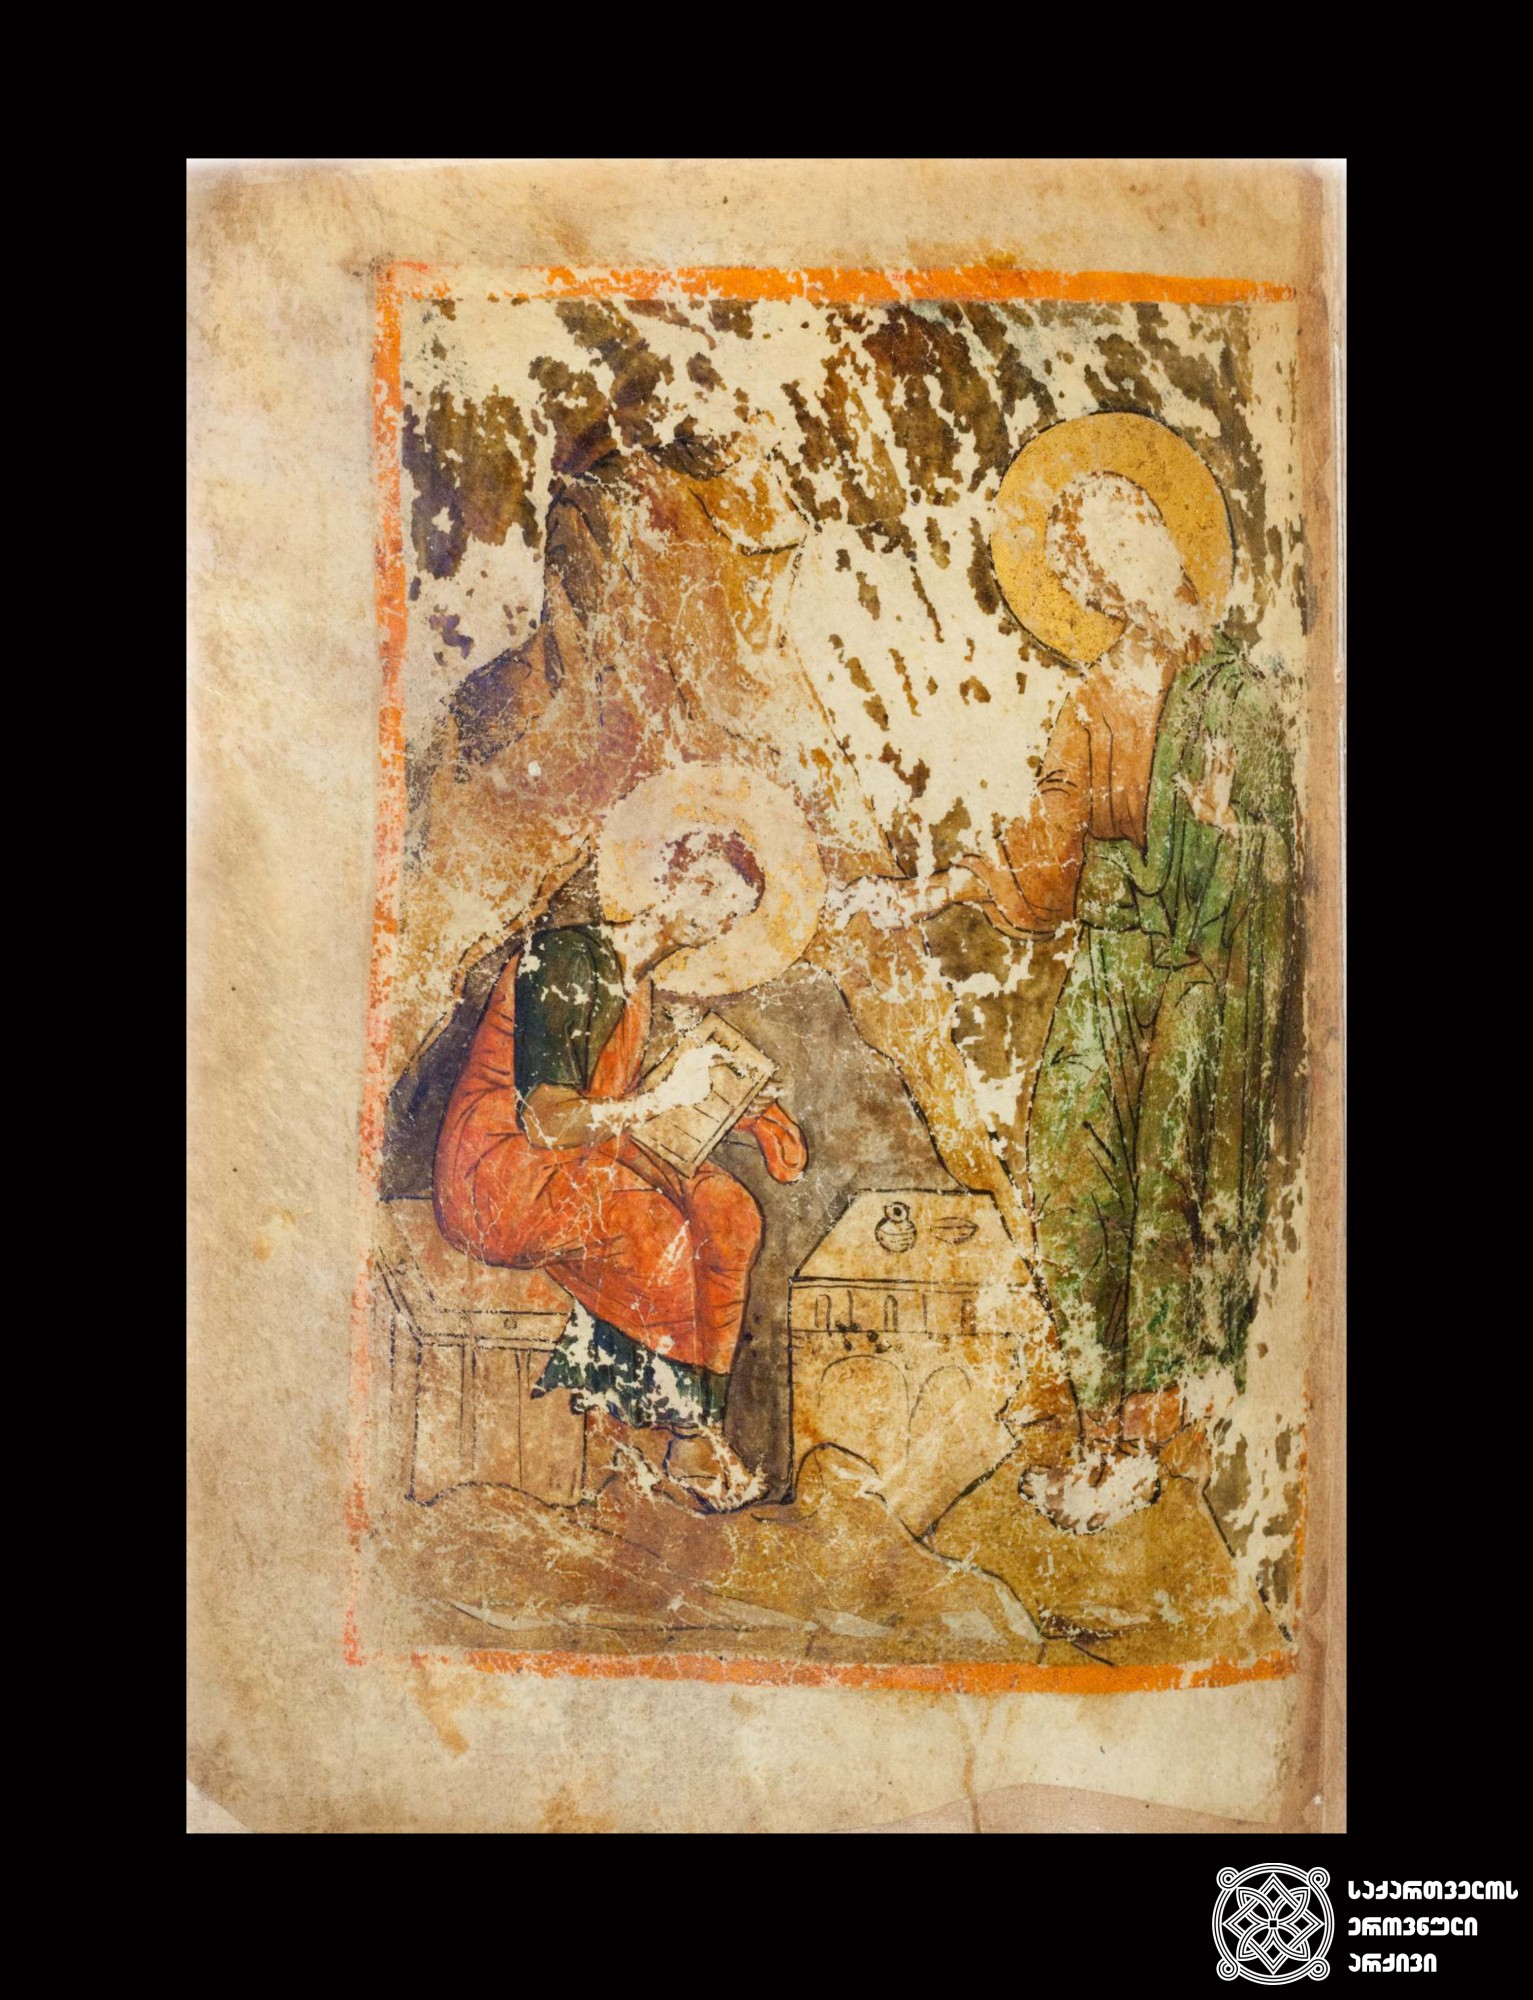 იოანე მახარებელი და პროხორე. სახარება, პალიმფსესტი, X, XII-XIII, XIV საუკუნეები. <br>
John the Apostle and Prokhore. The Gospel. Palimpsest. X , XI-XII, XIVth centuries.